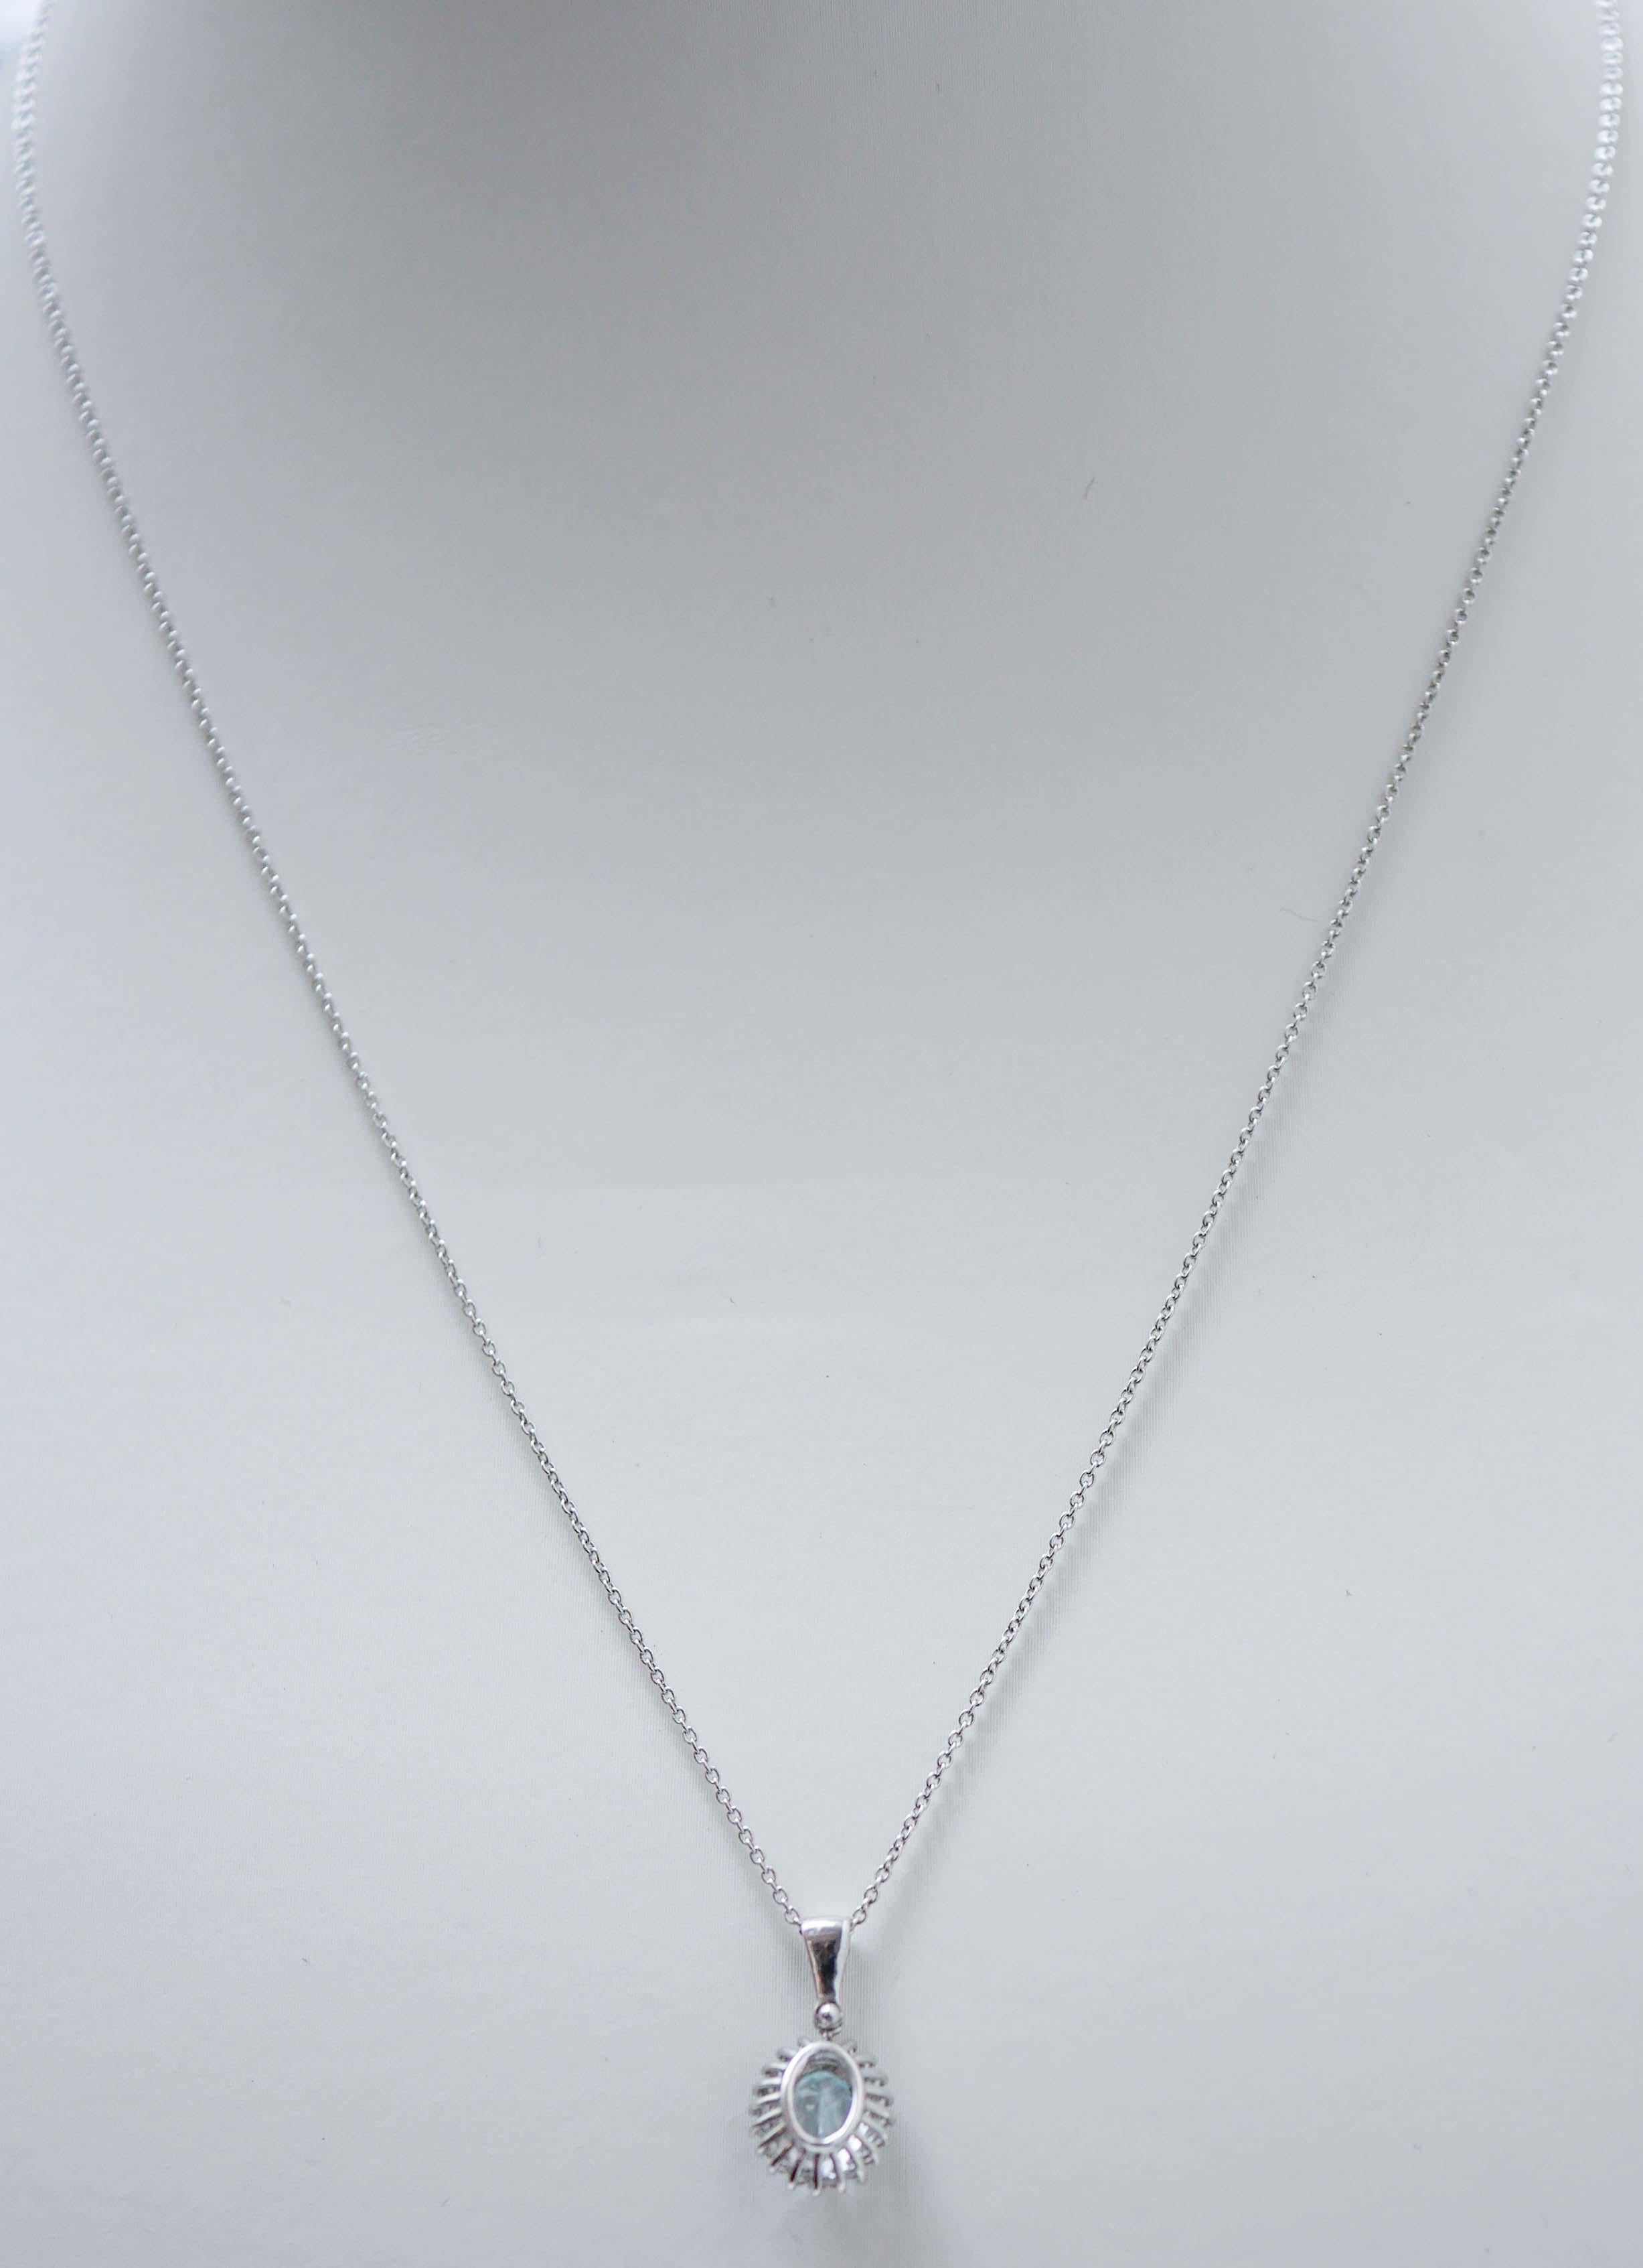 Mixed Cut Aquamarine Colour Topaz, Diamonds, 18 Karat White Gold Pendant Necklace. For Sale